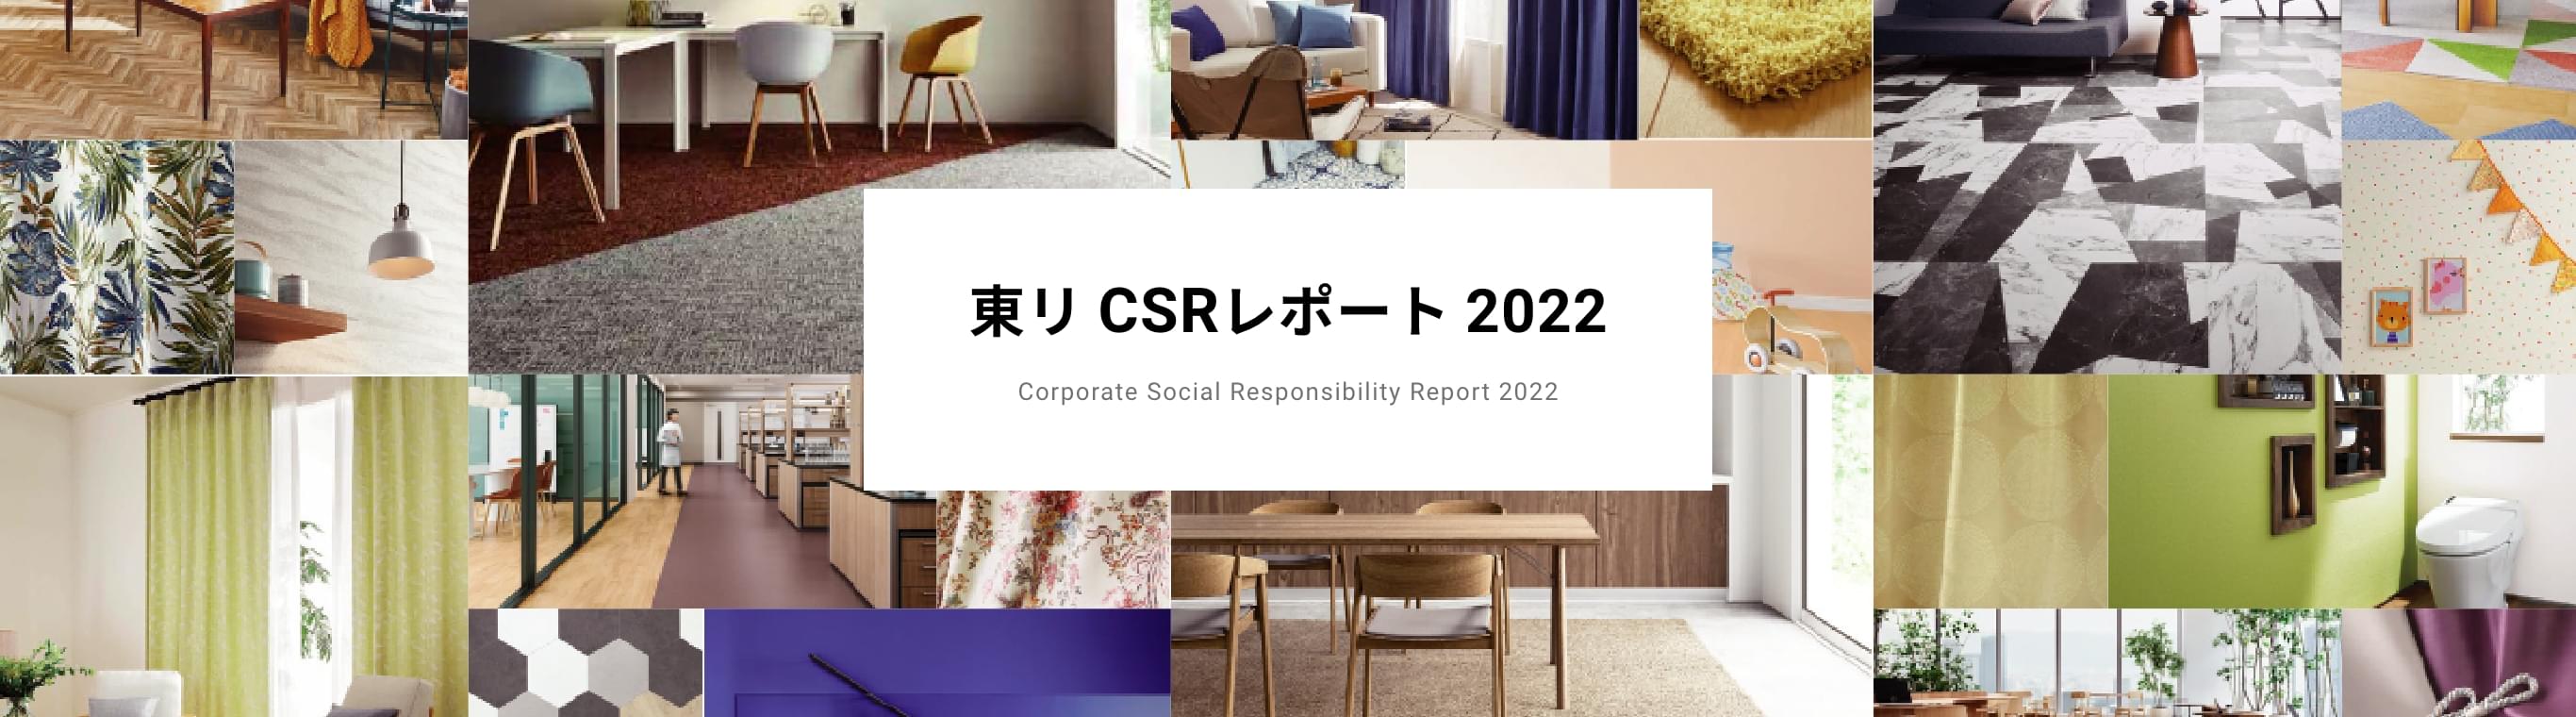 東リ CSRレポート 2022